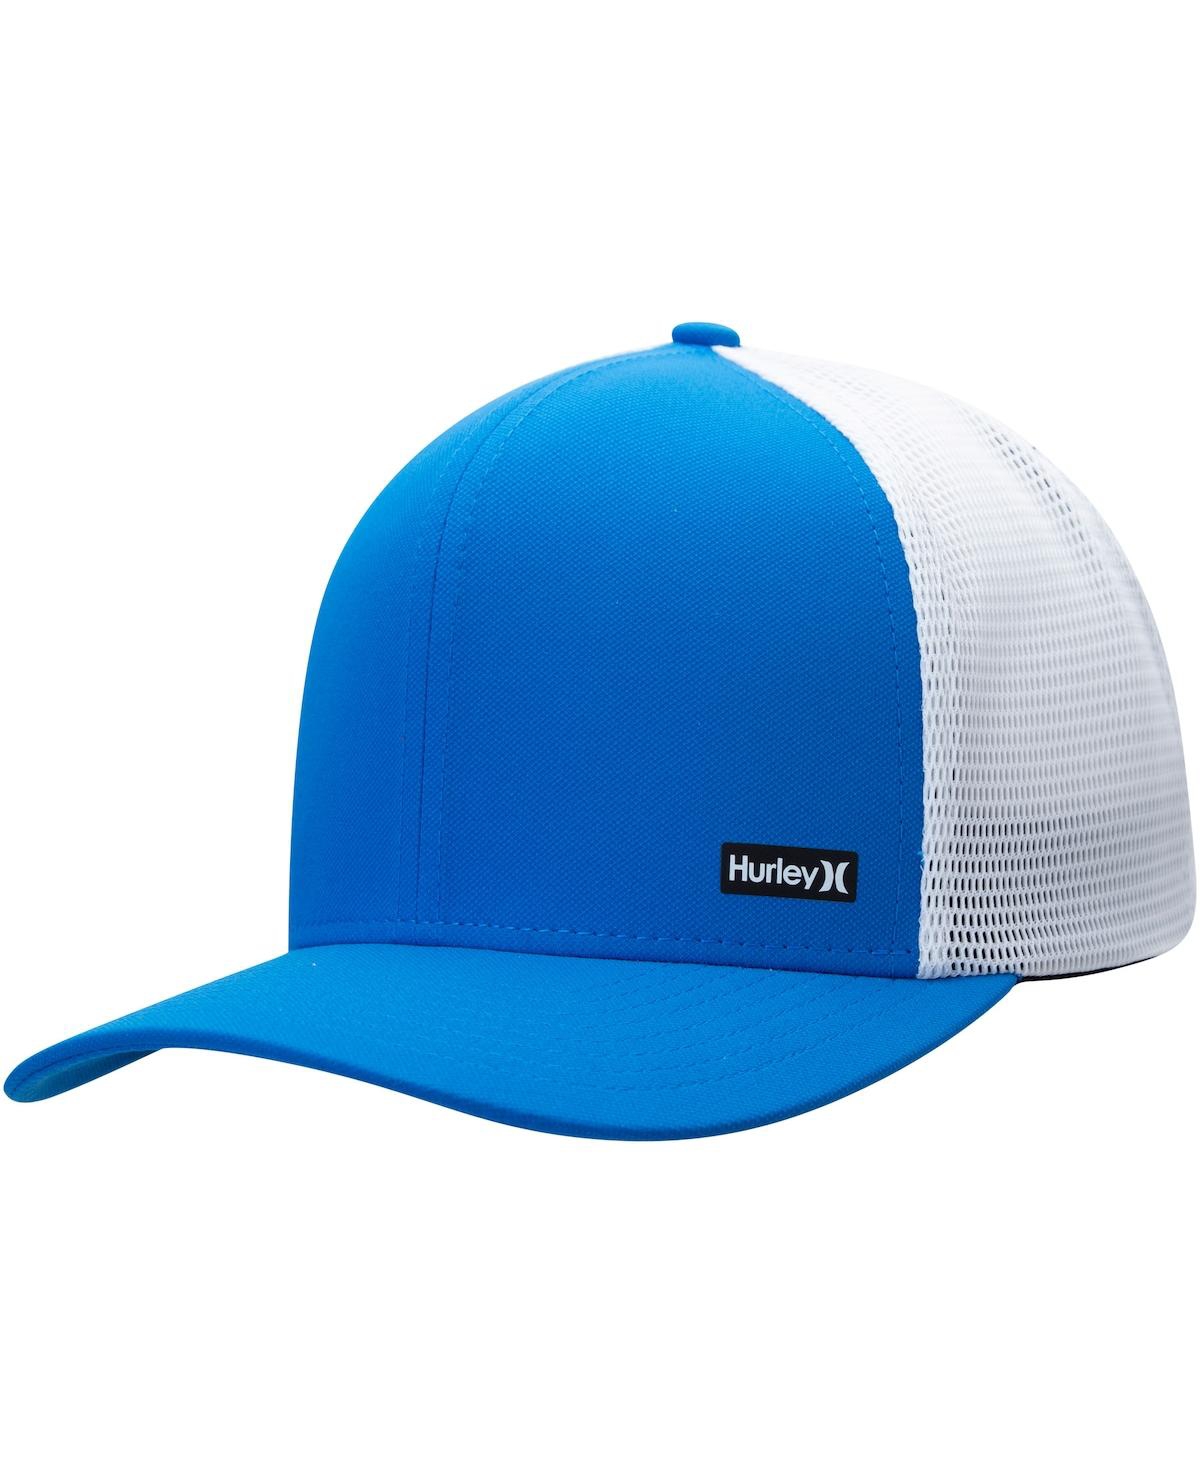 Hurley Men's  Blue League Trucker Adjustable Hat